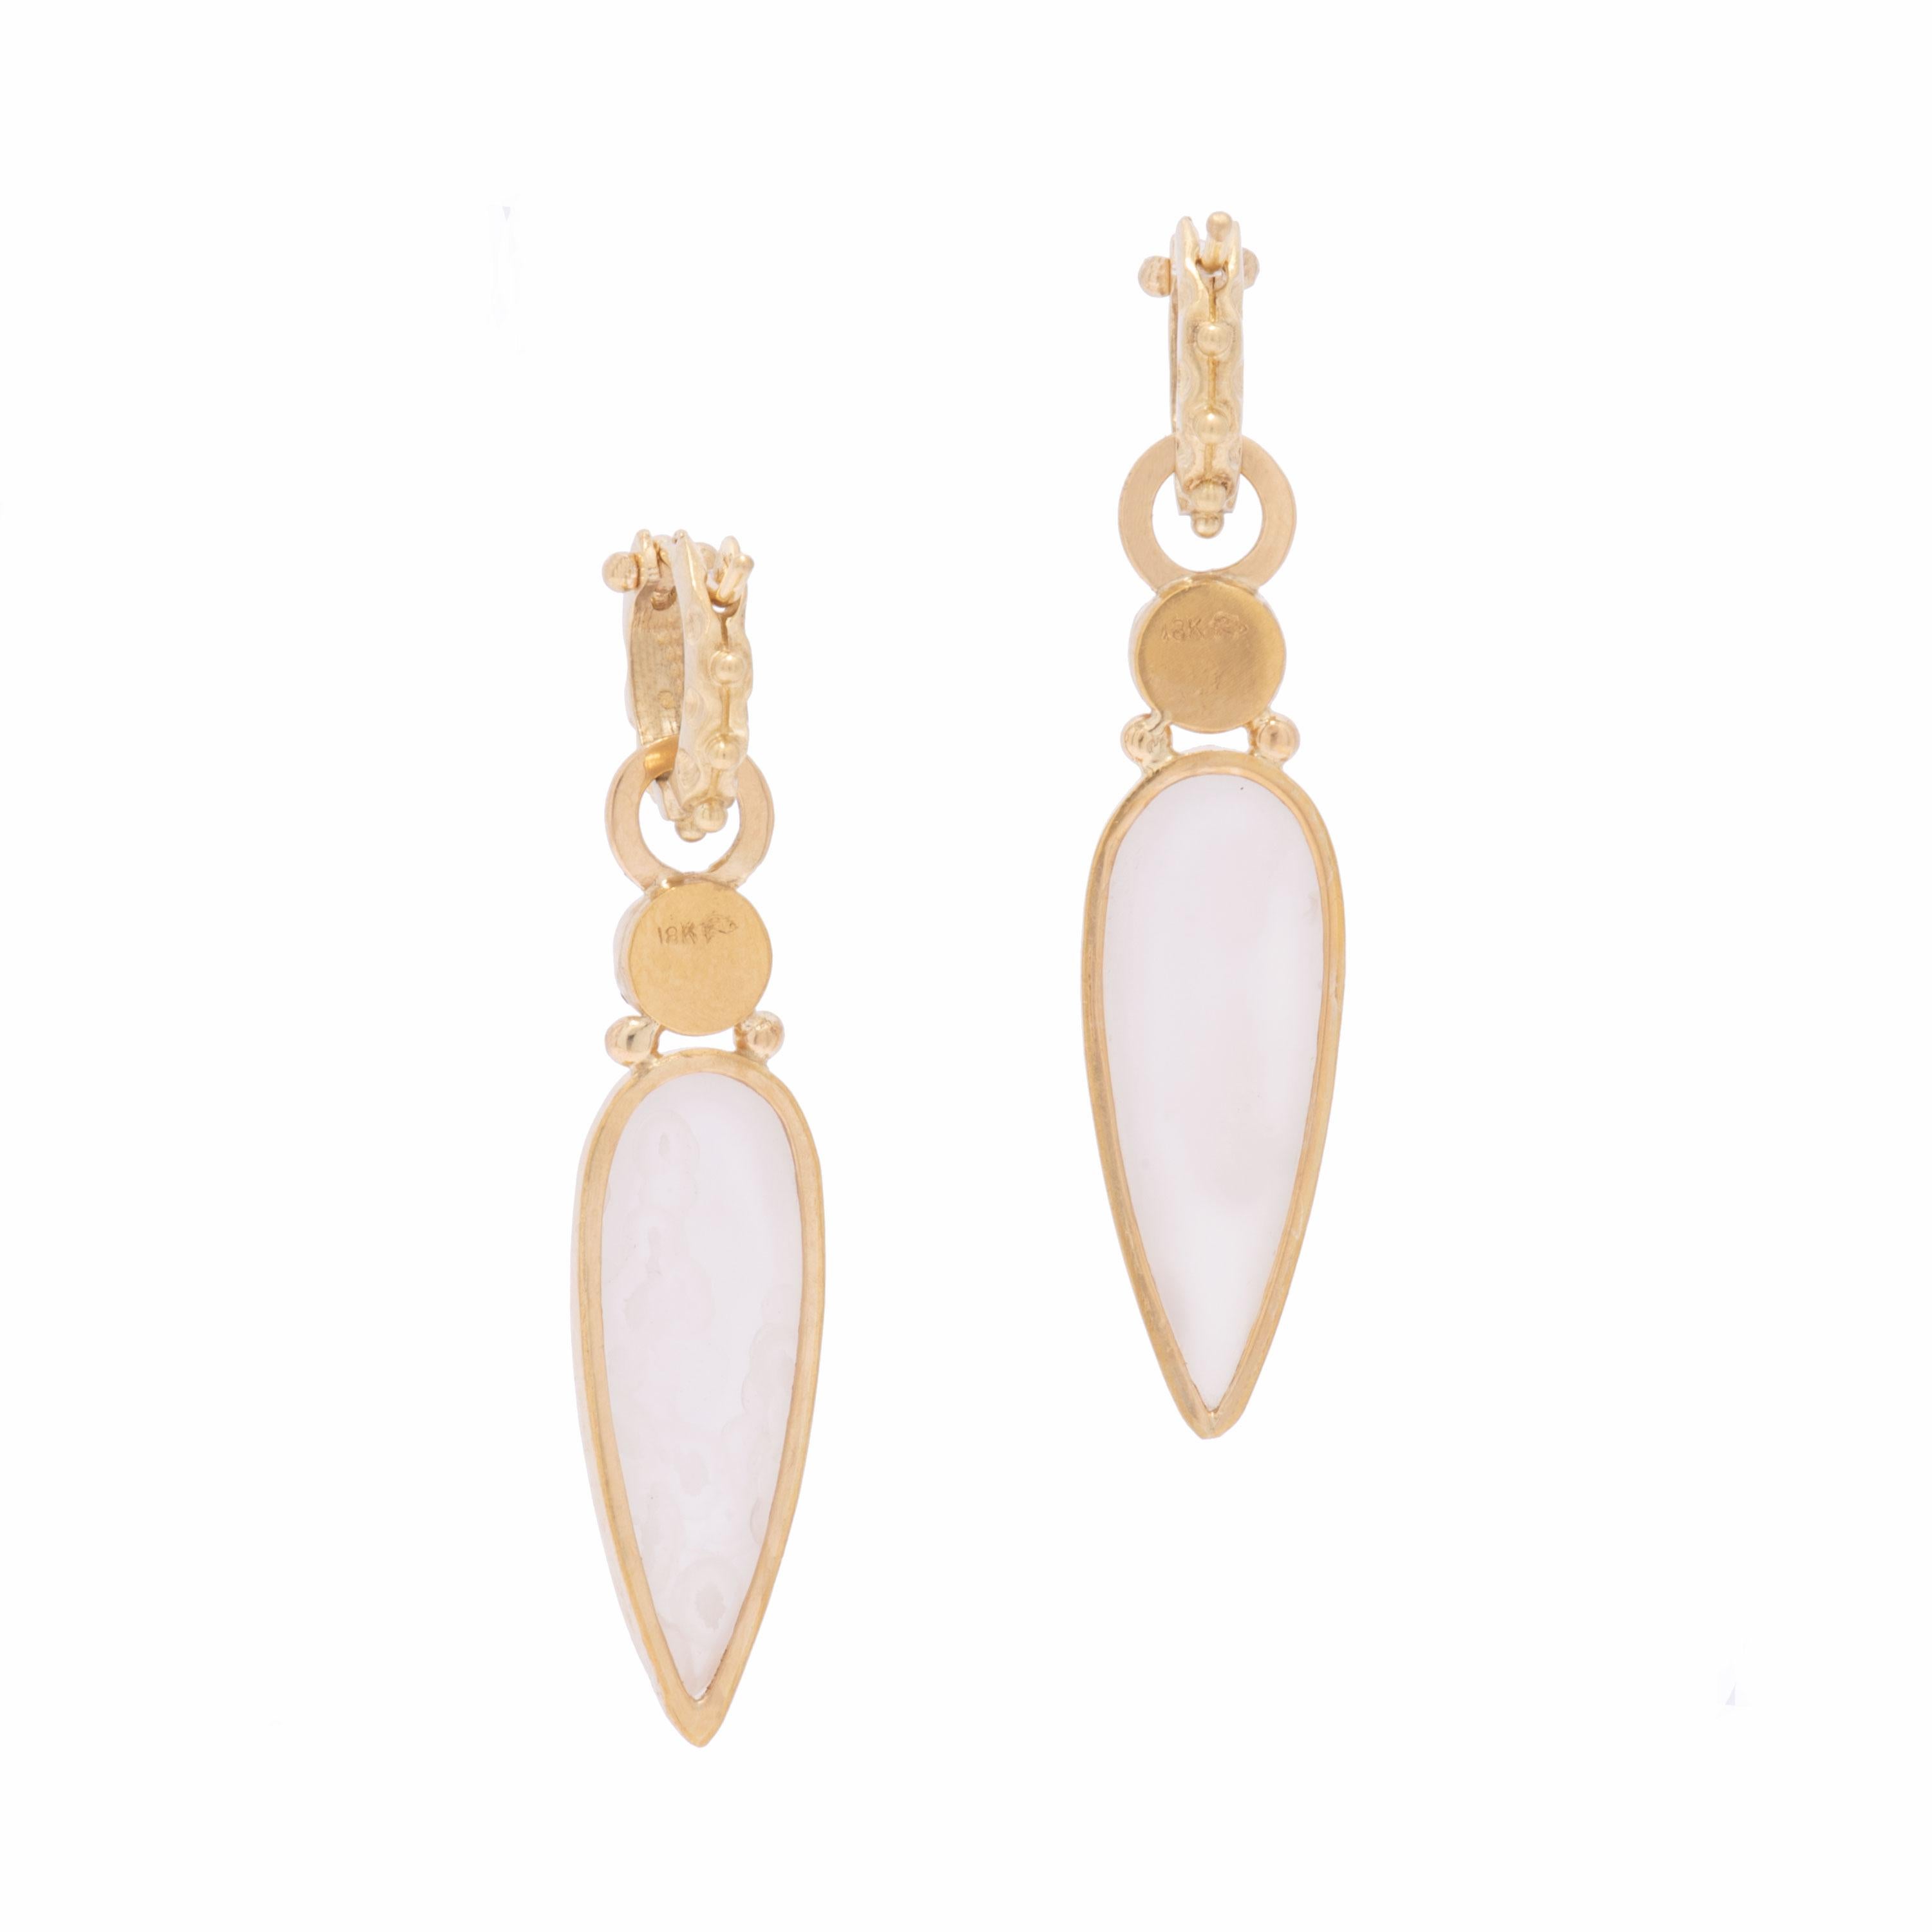 Women's or Men's Long White Druzy Teardrop Earrings in 18 Karat Gold with Iolite Cabochons